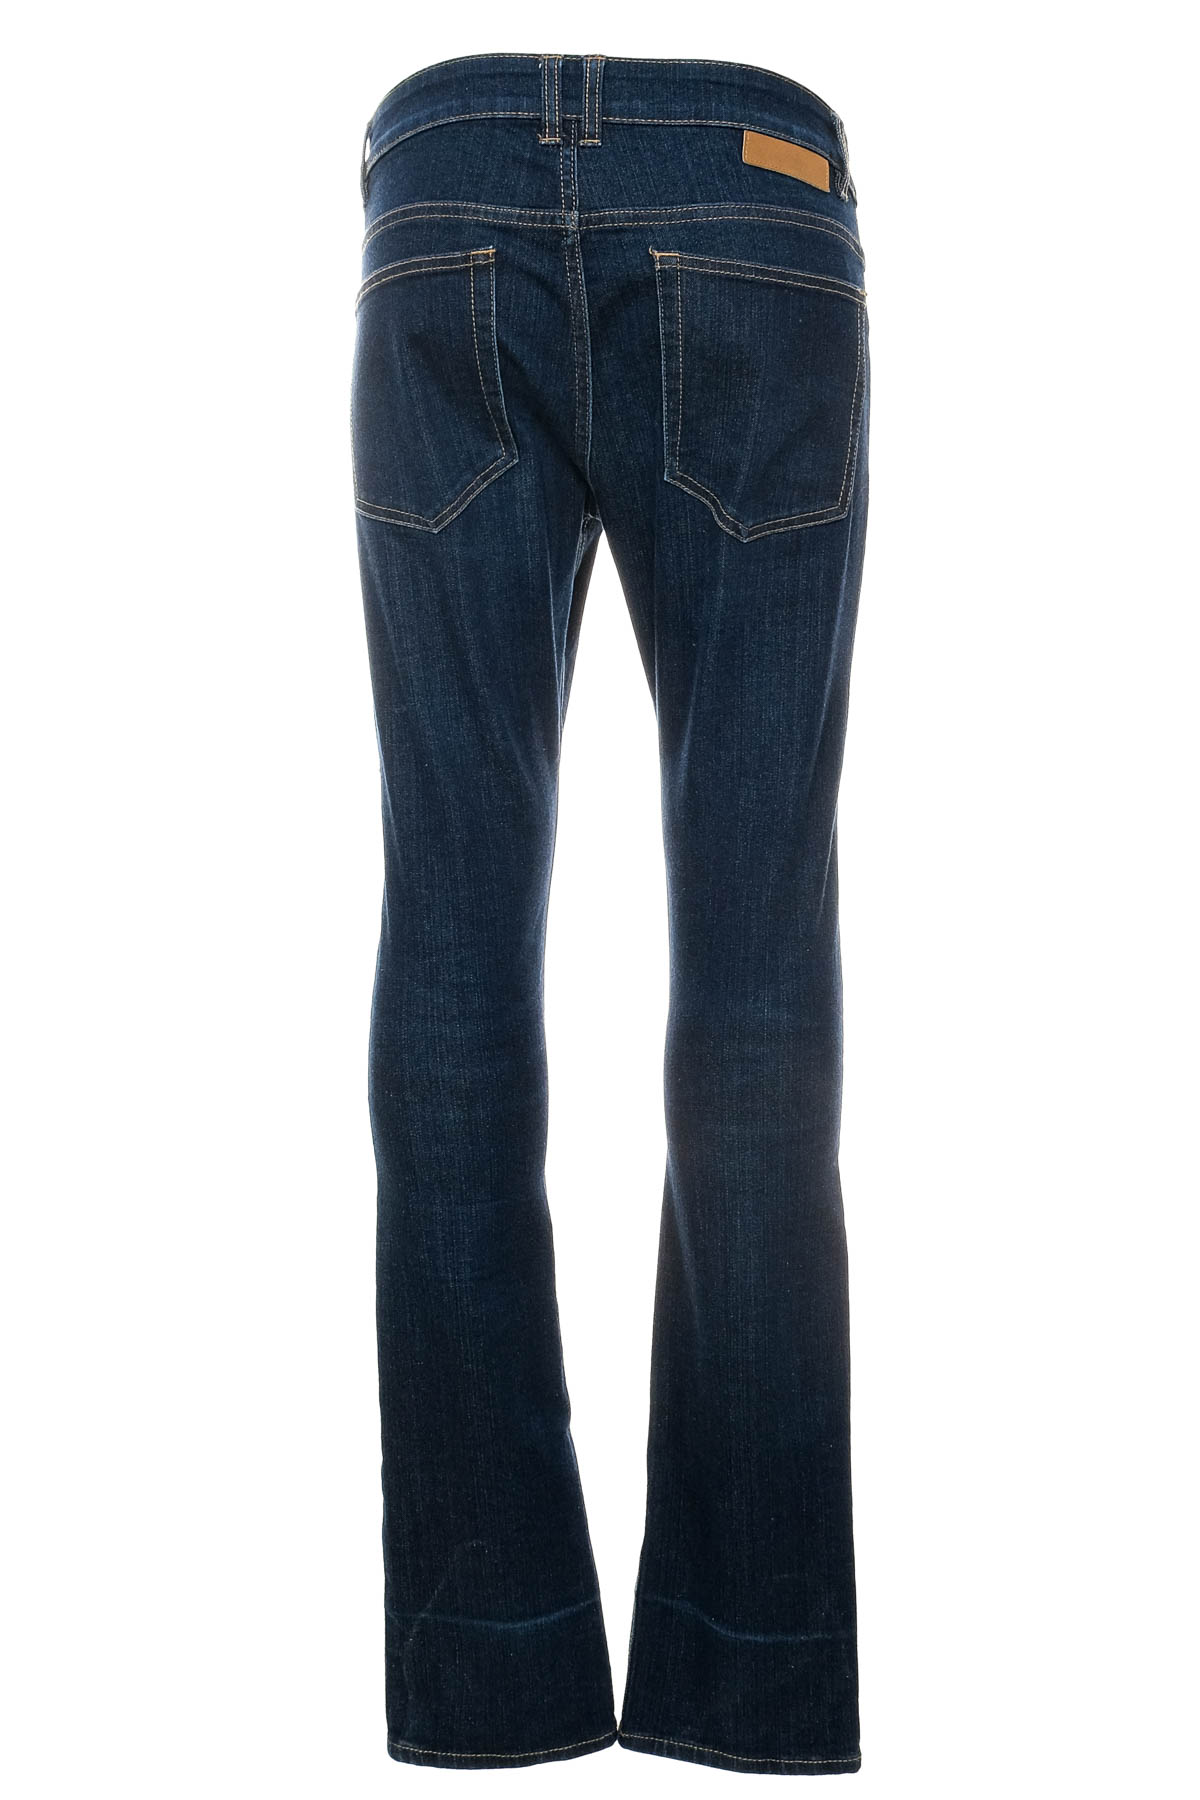 Men's jeans - JBC - 1